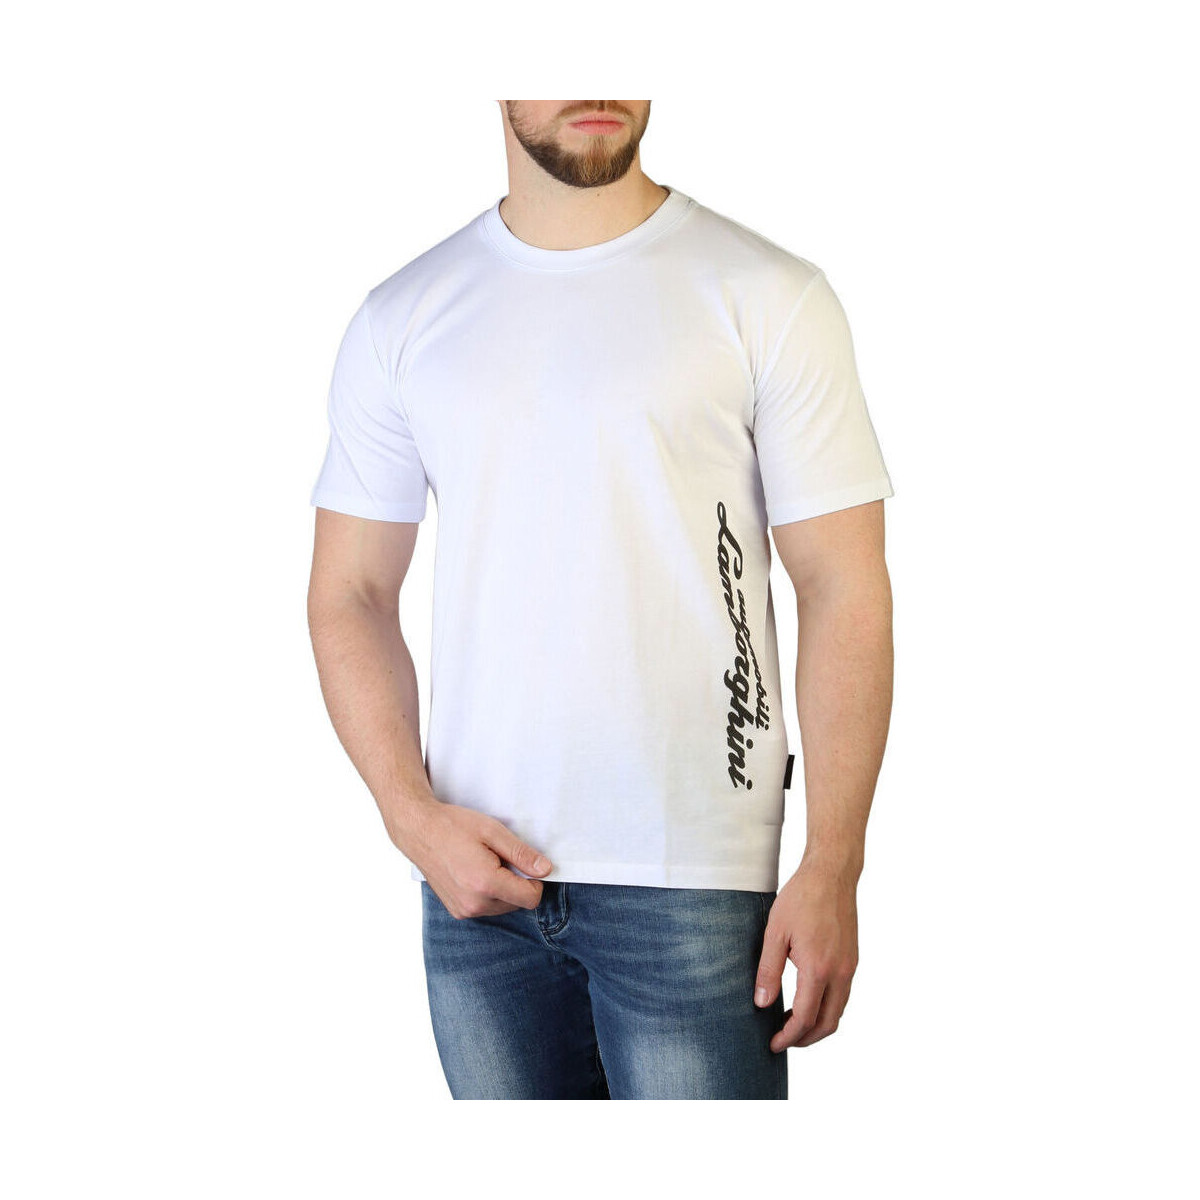 Abbigliamento Uomo T-shirt maniche corte Lamborghini - b3xvb7b5 Bianco